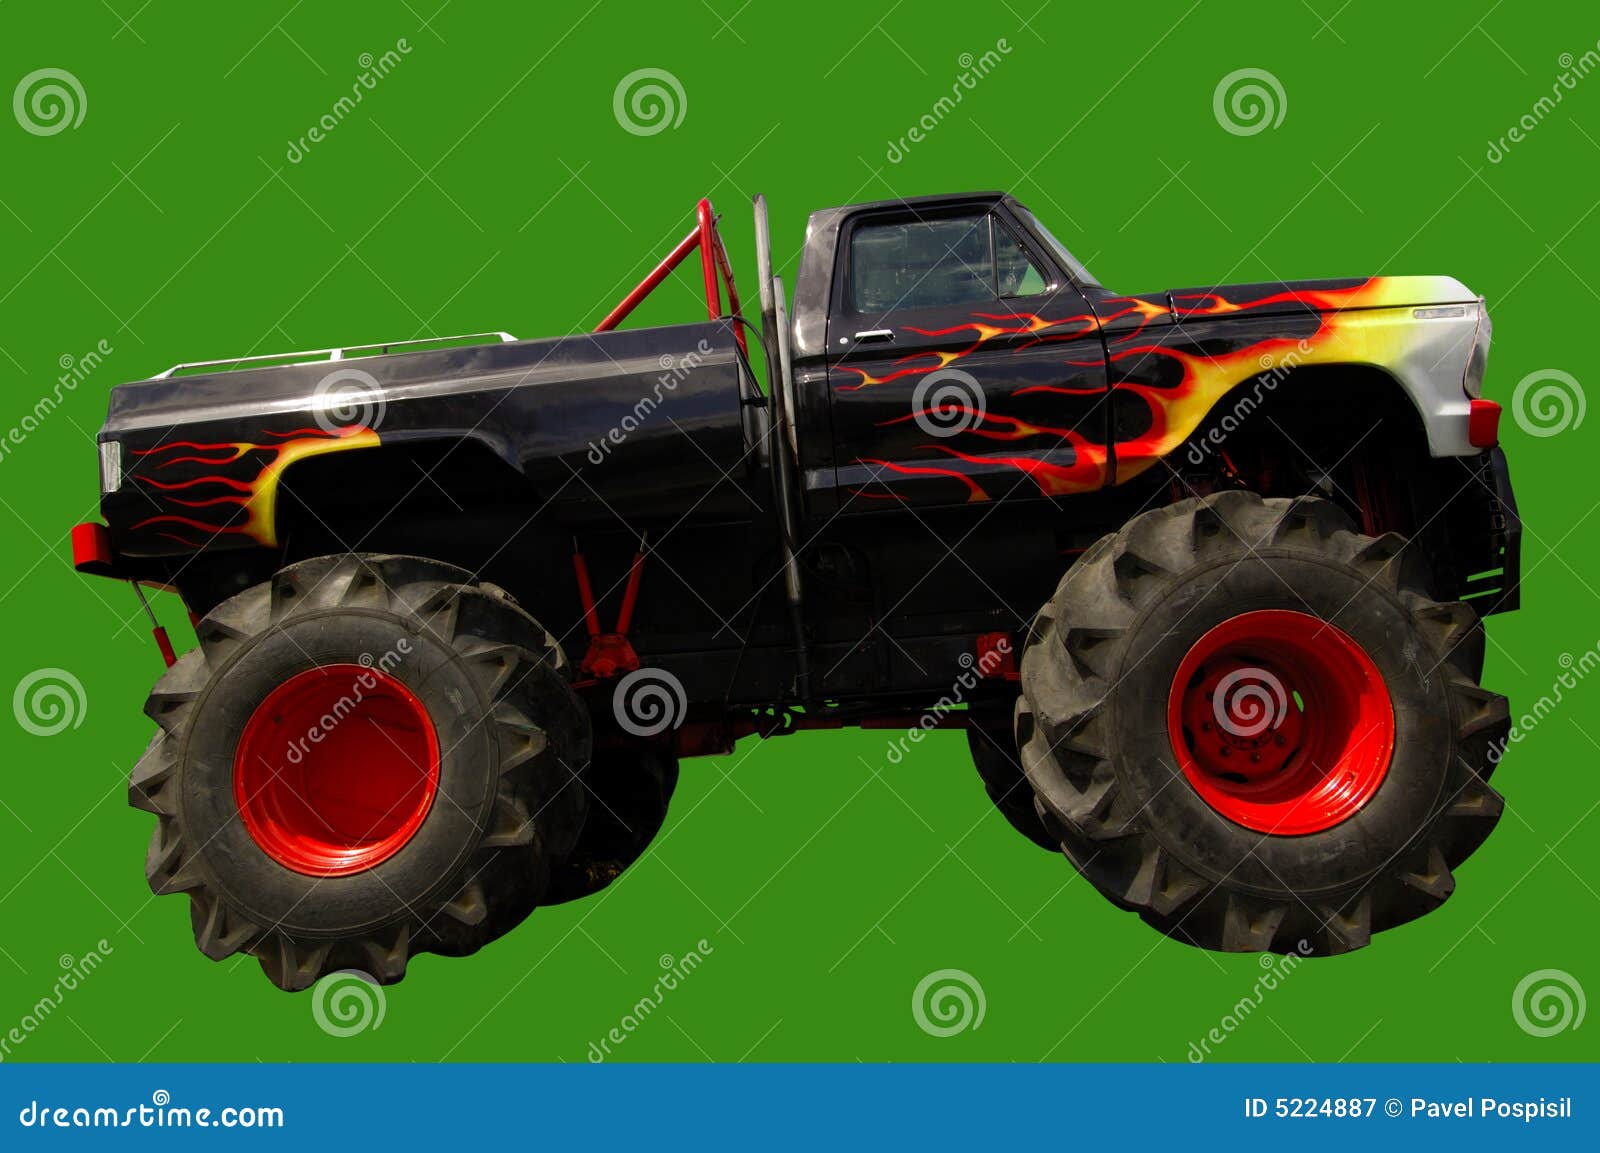 monster truck 4x4